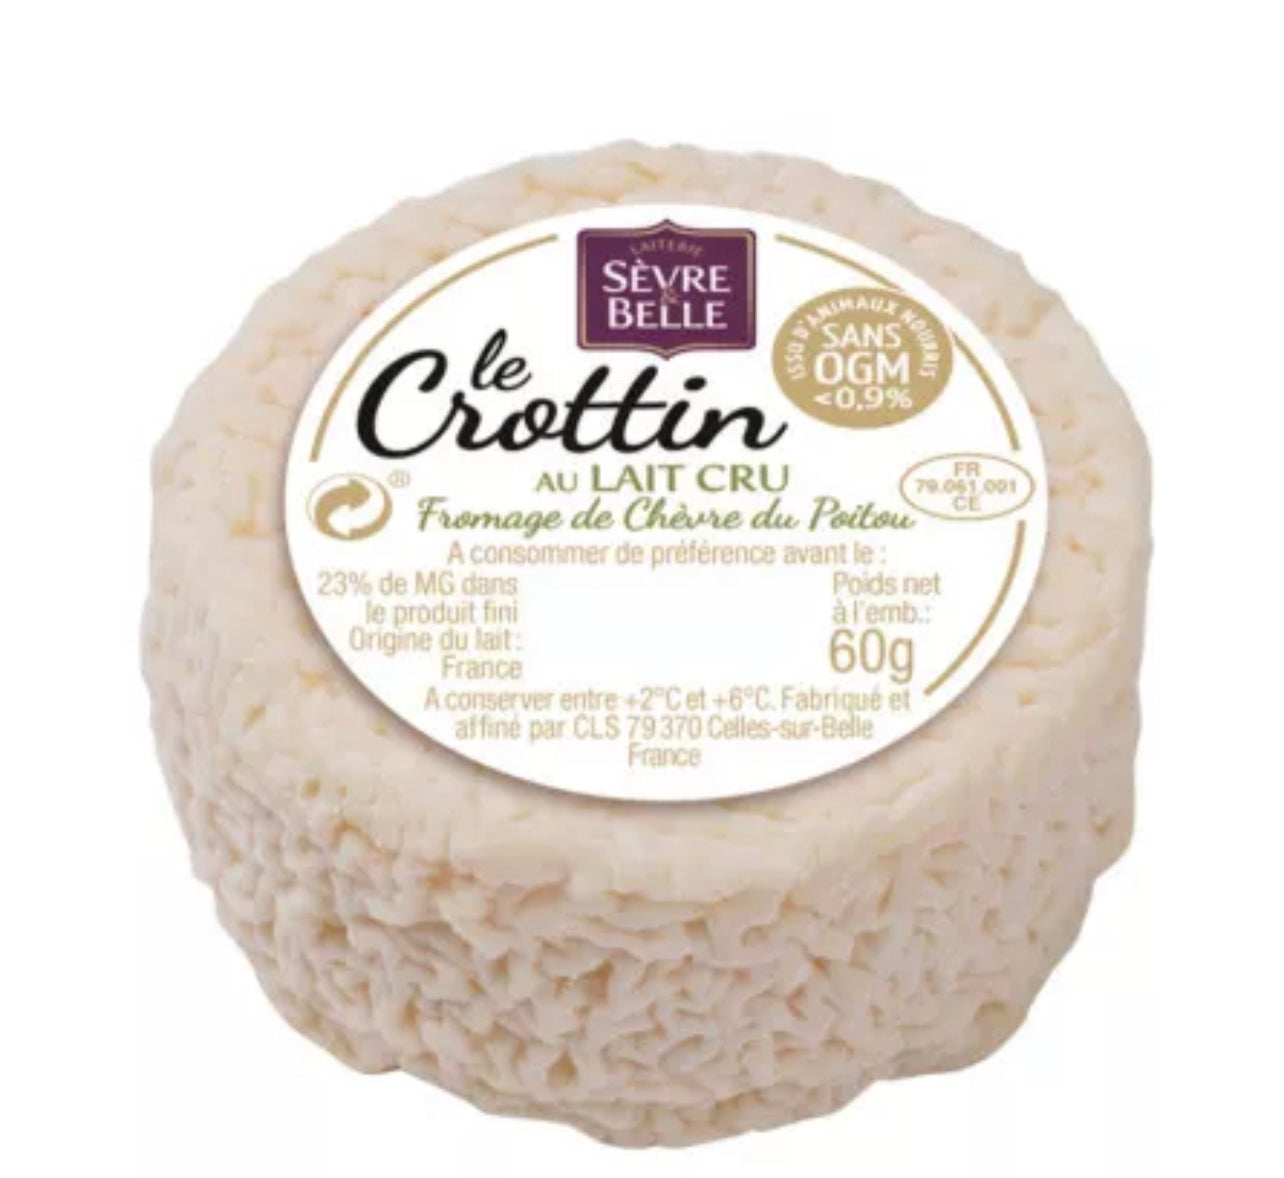 Le Crottin | Fromage de chèvre au lait cru - 12x60g